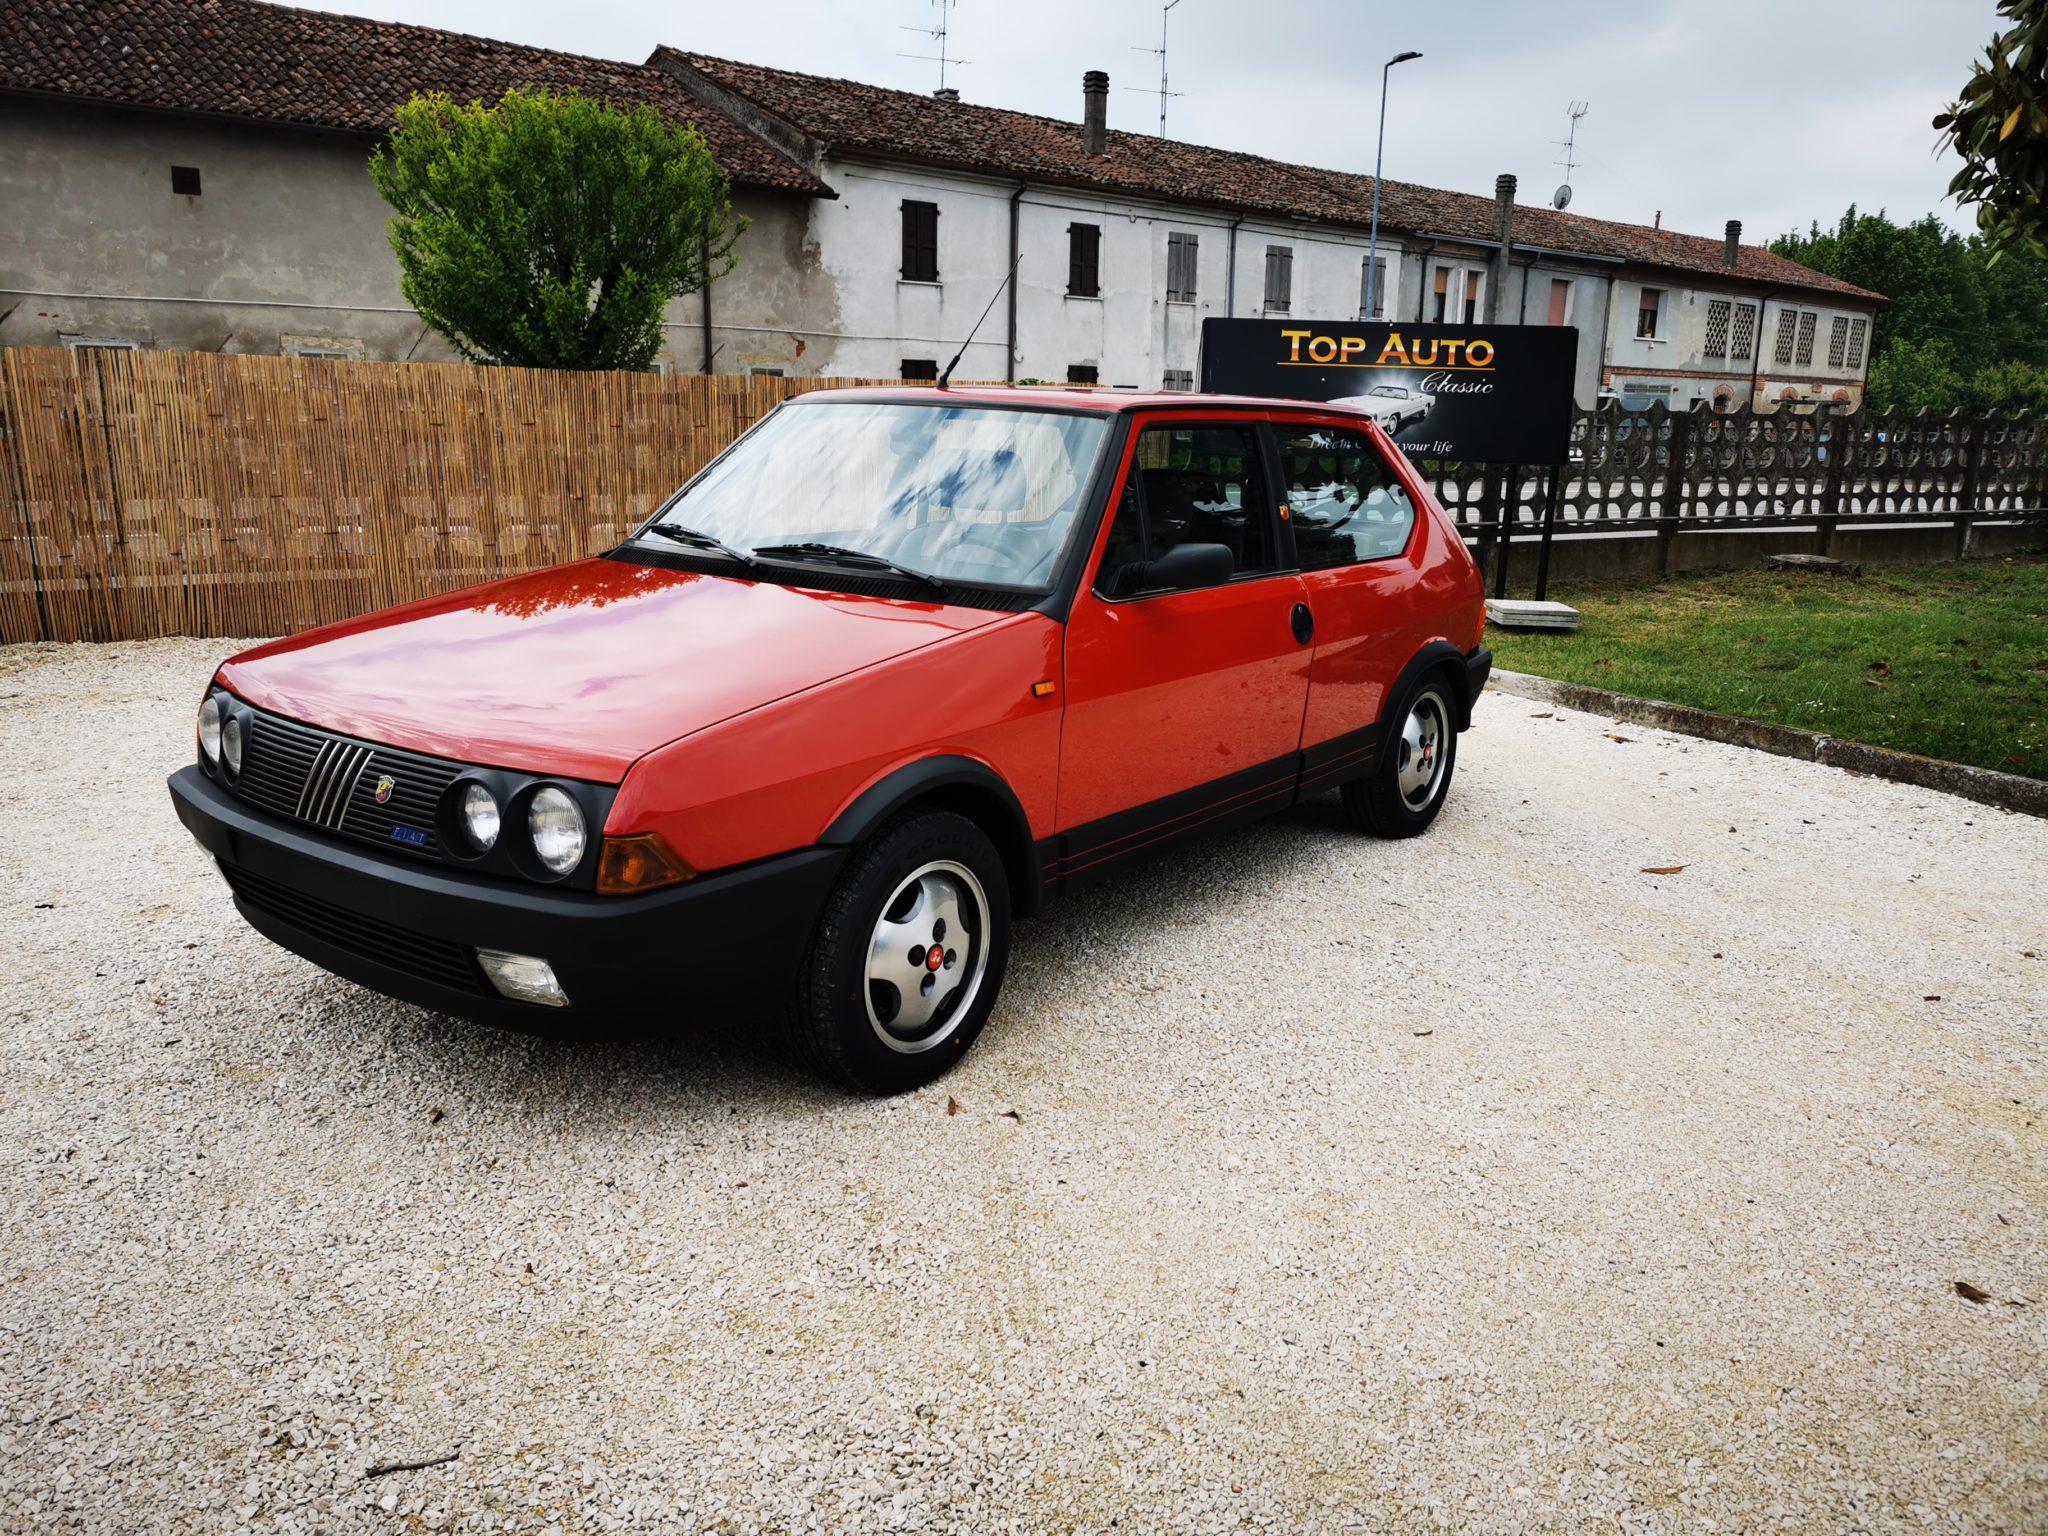 Fiat Ritmo Abarth Tc Fiat D Epoca E Tocco Di Abarth Top Auto Classic